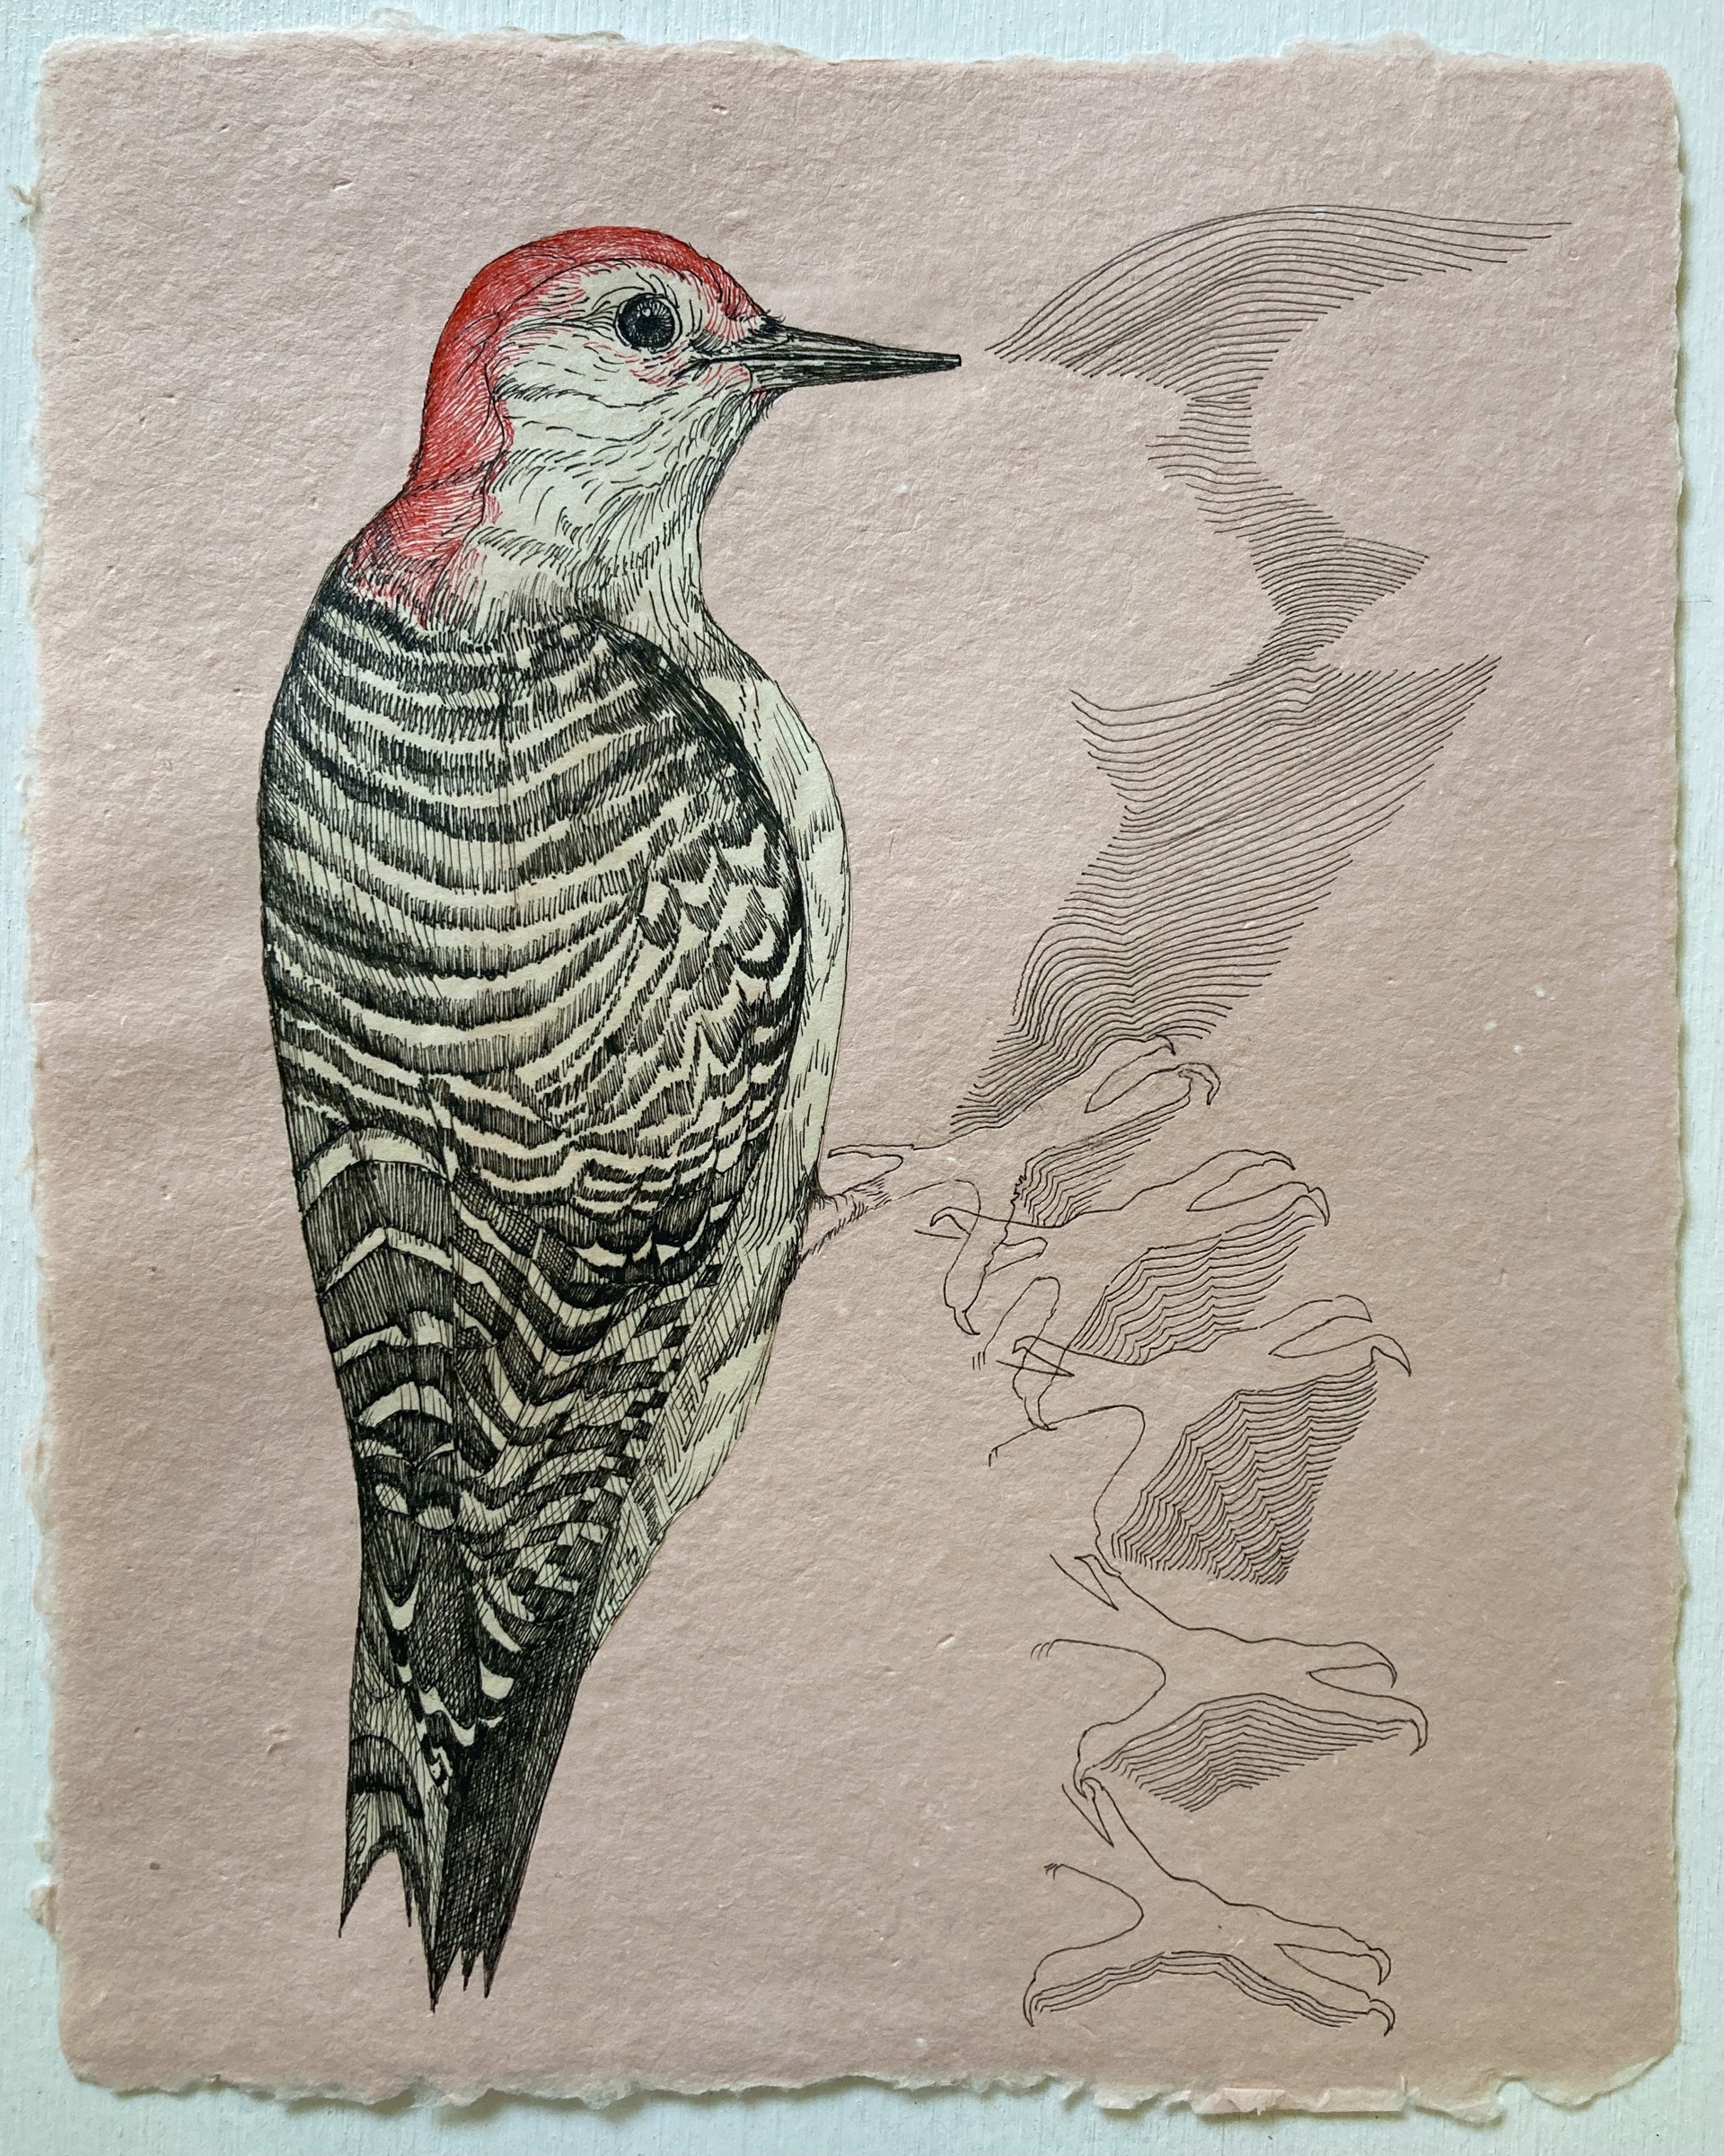 Listen to the Birds: Red-Bellied Woodpecker by Kirsten Furlong